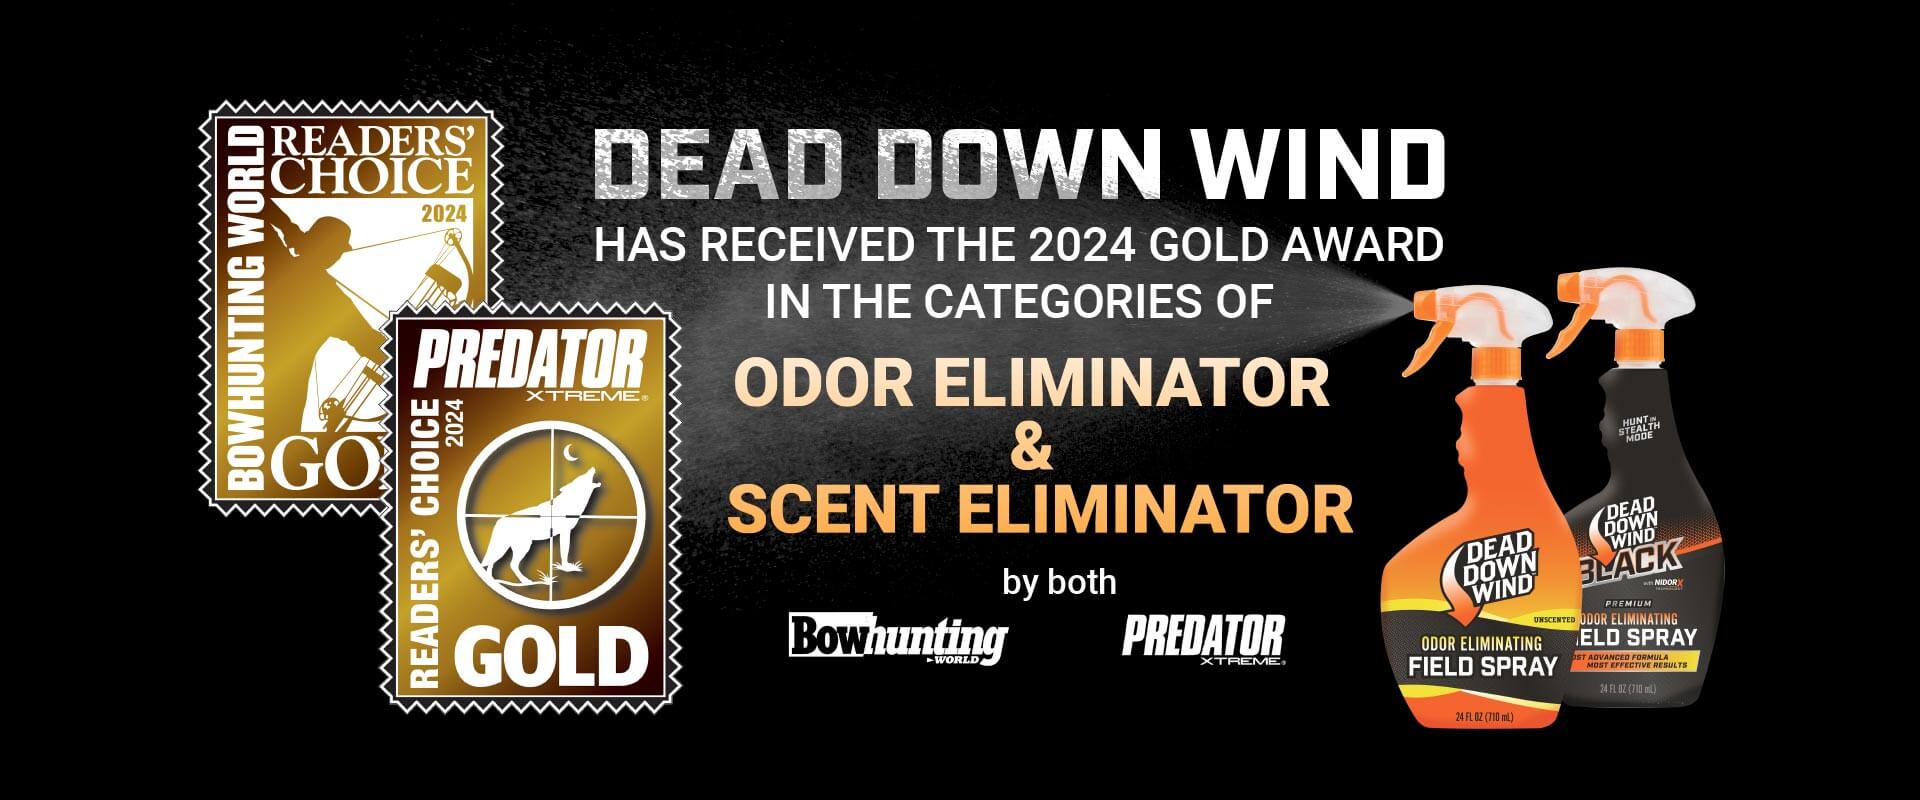 Dead Down Wind receives 2024 Gold Award - Odor Eliminator and Scent Eliminator